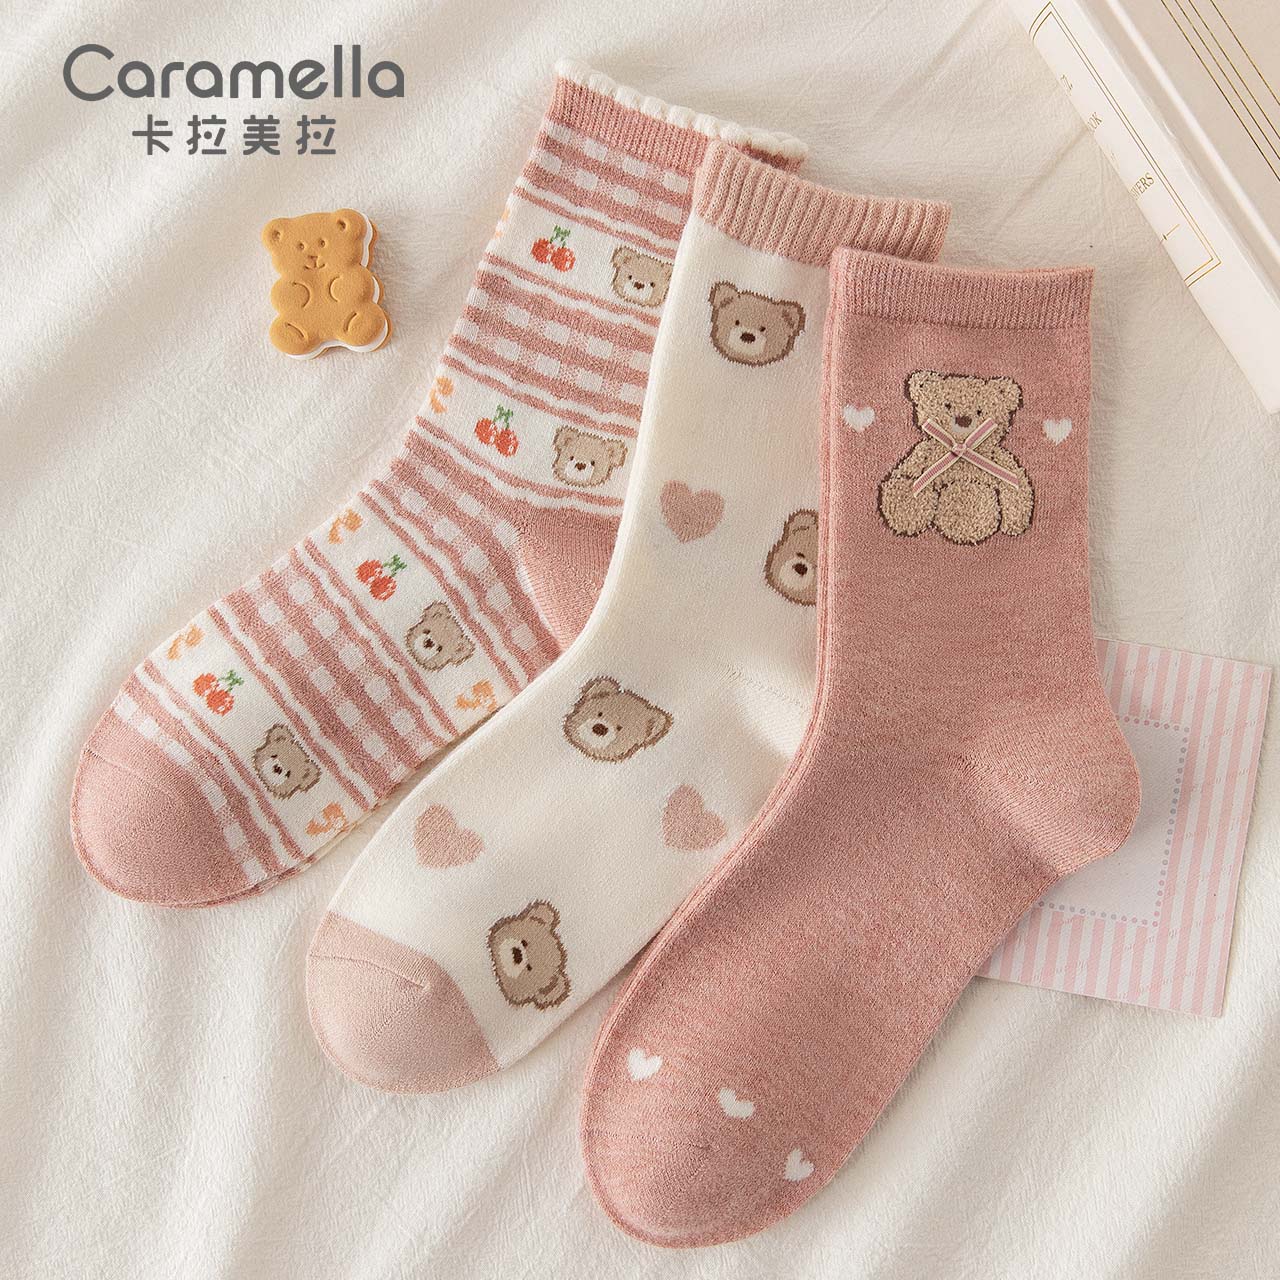 Caramella 卡拉美拉 女士羊毛袜 3双装 18.7元包邮（双重优惠）